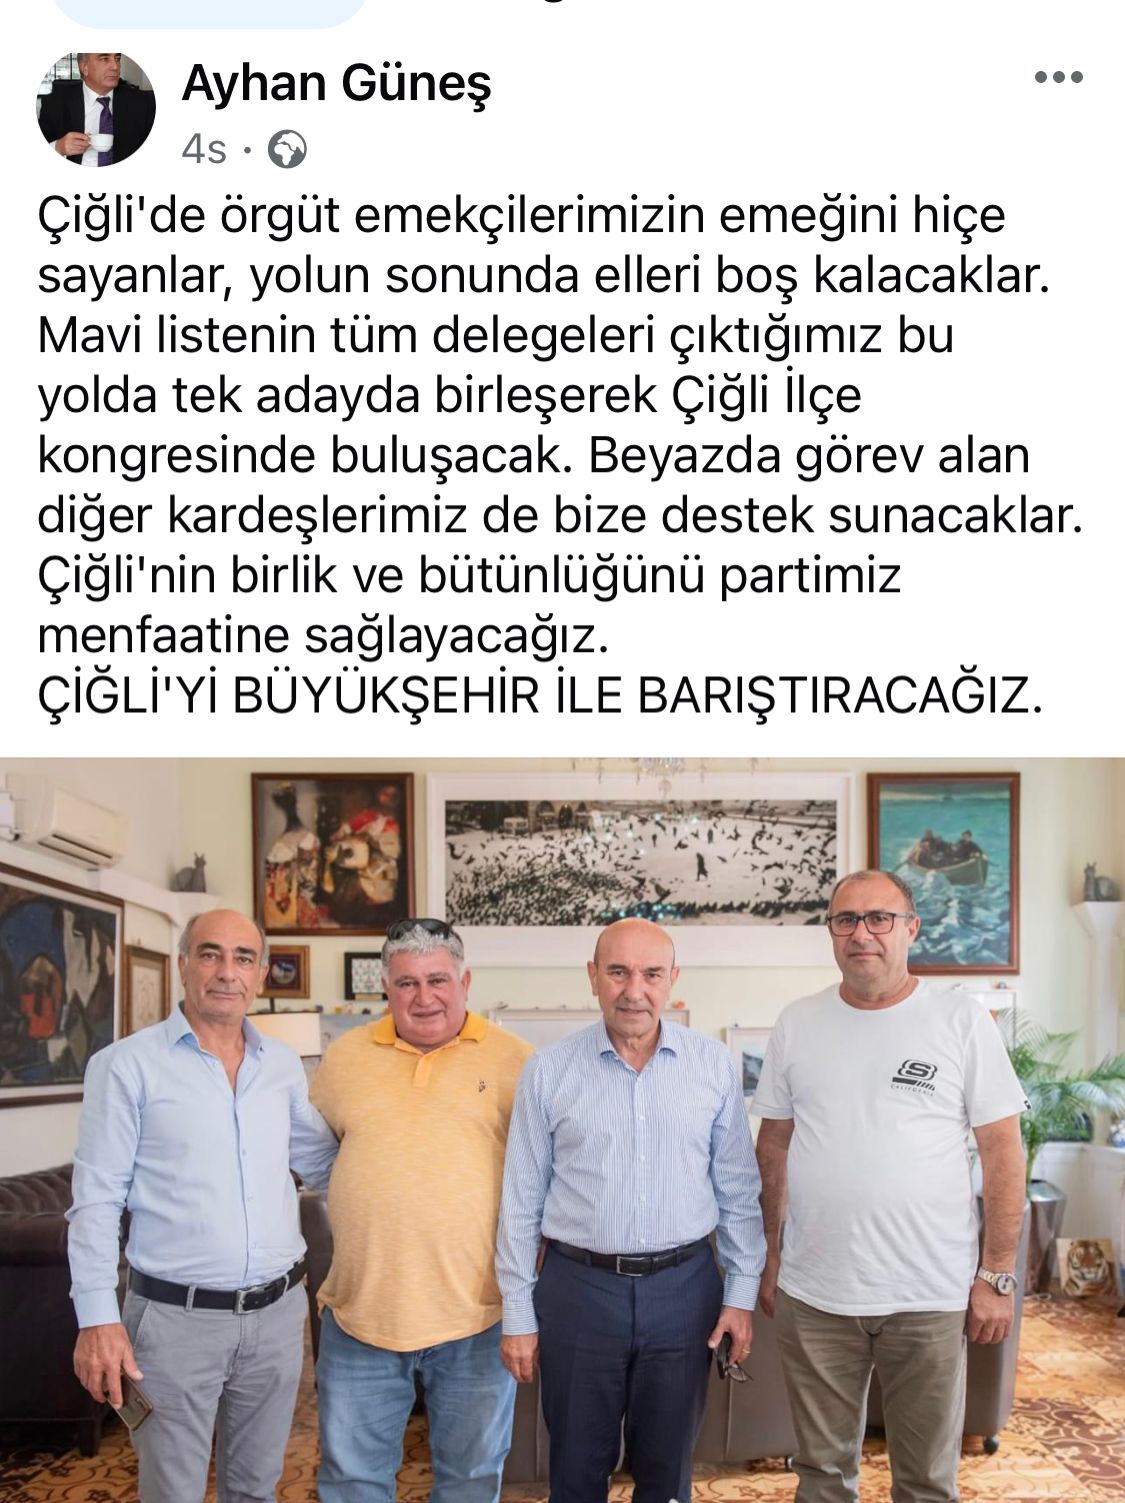 Tunç Soyer Sadece Utku Gümrükçü'ye Değil Bütün Çiğli'ye Kazık Attı!!!